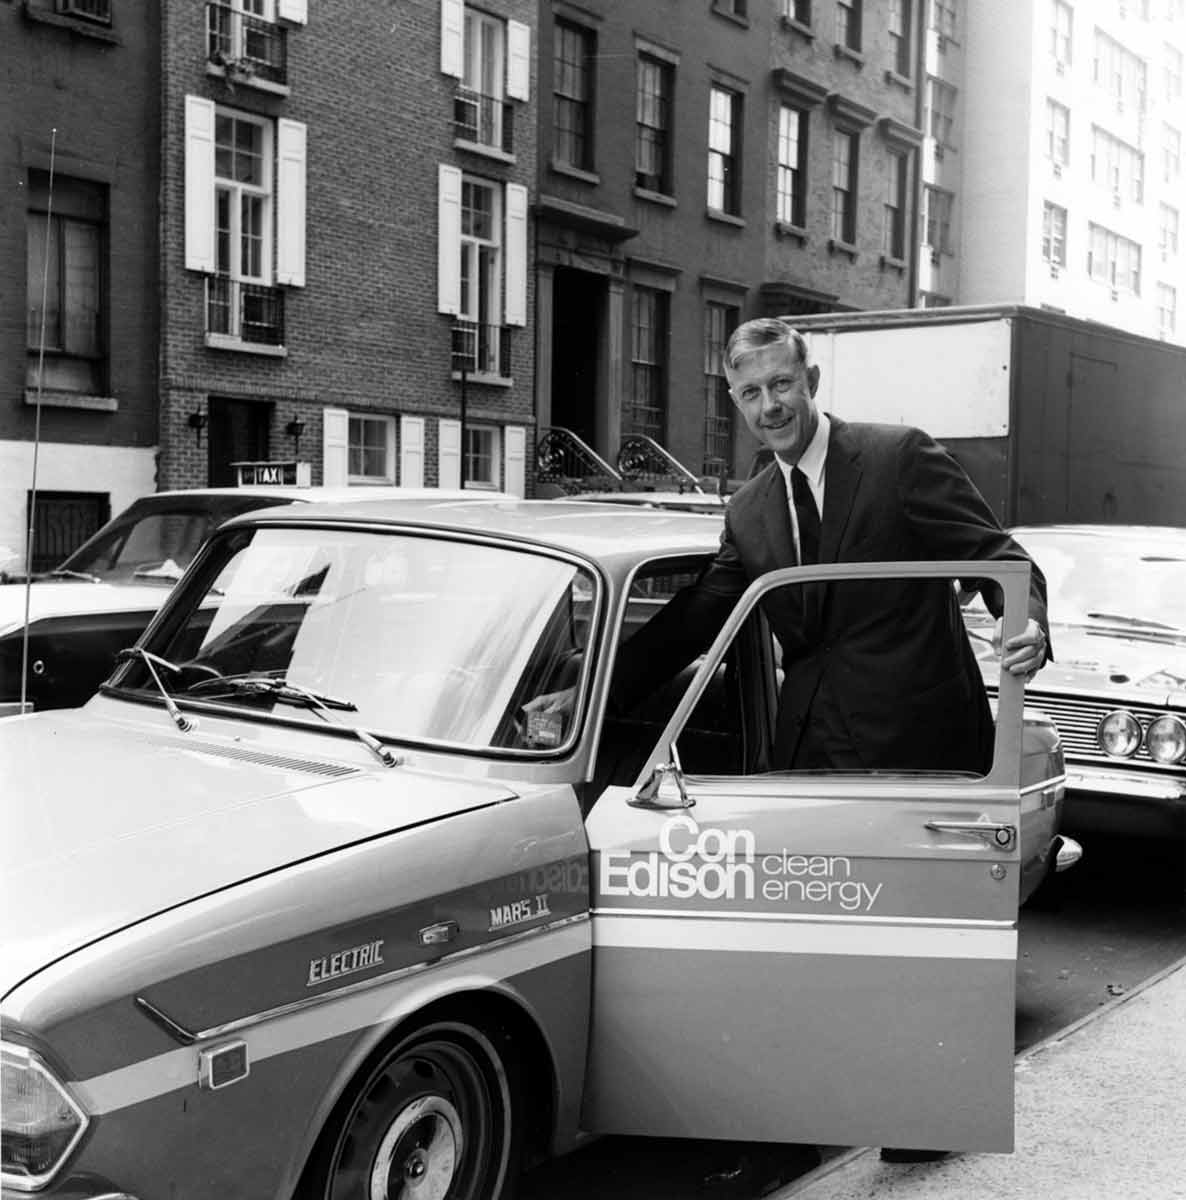 Fotografía en blanco y negro de un hombre subiéndose a un vehículo de Con Edison en la ciudad de Nueva York.